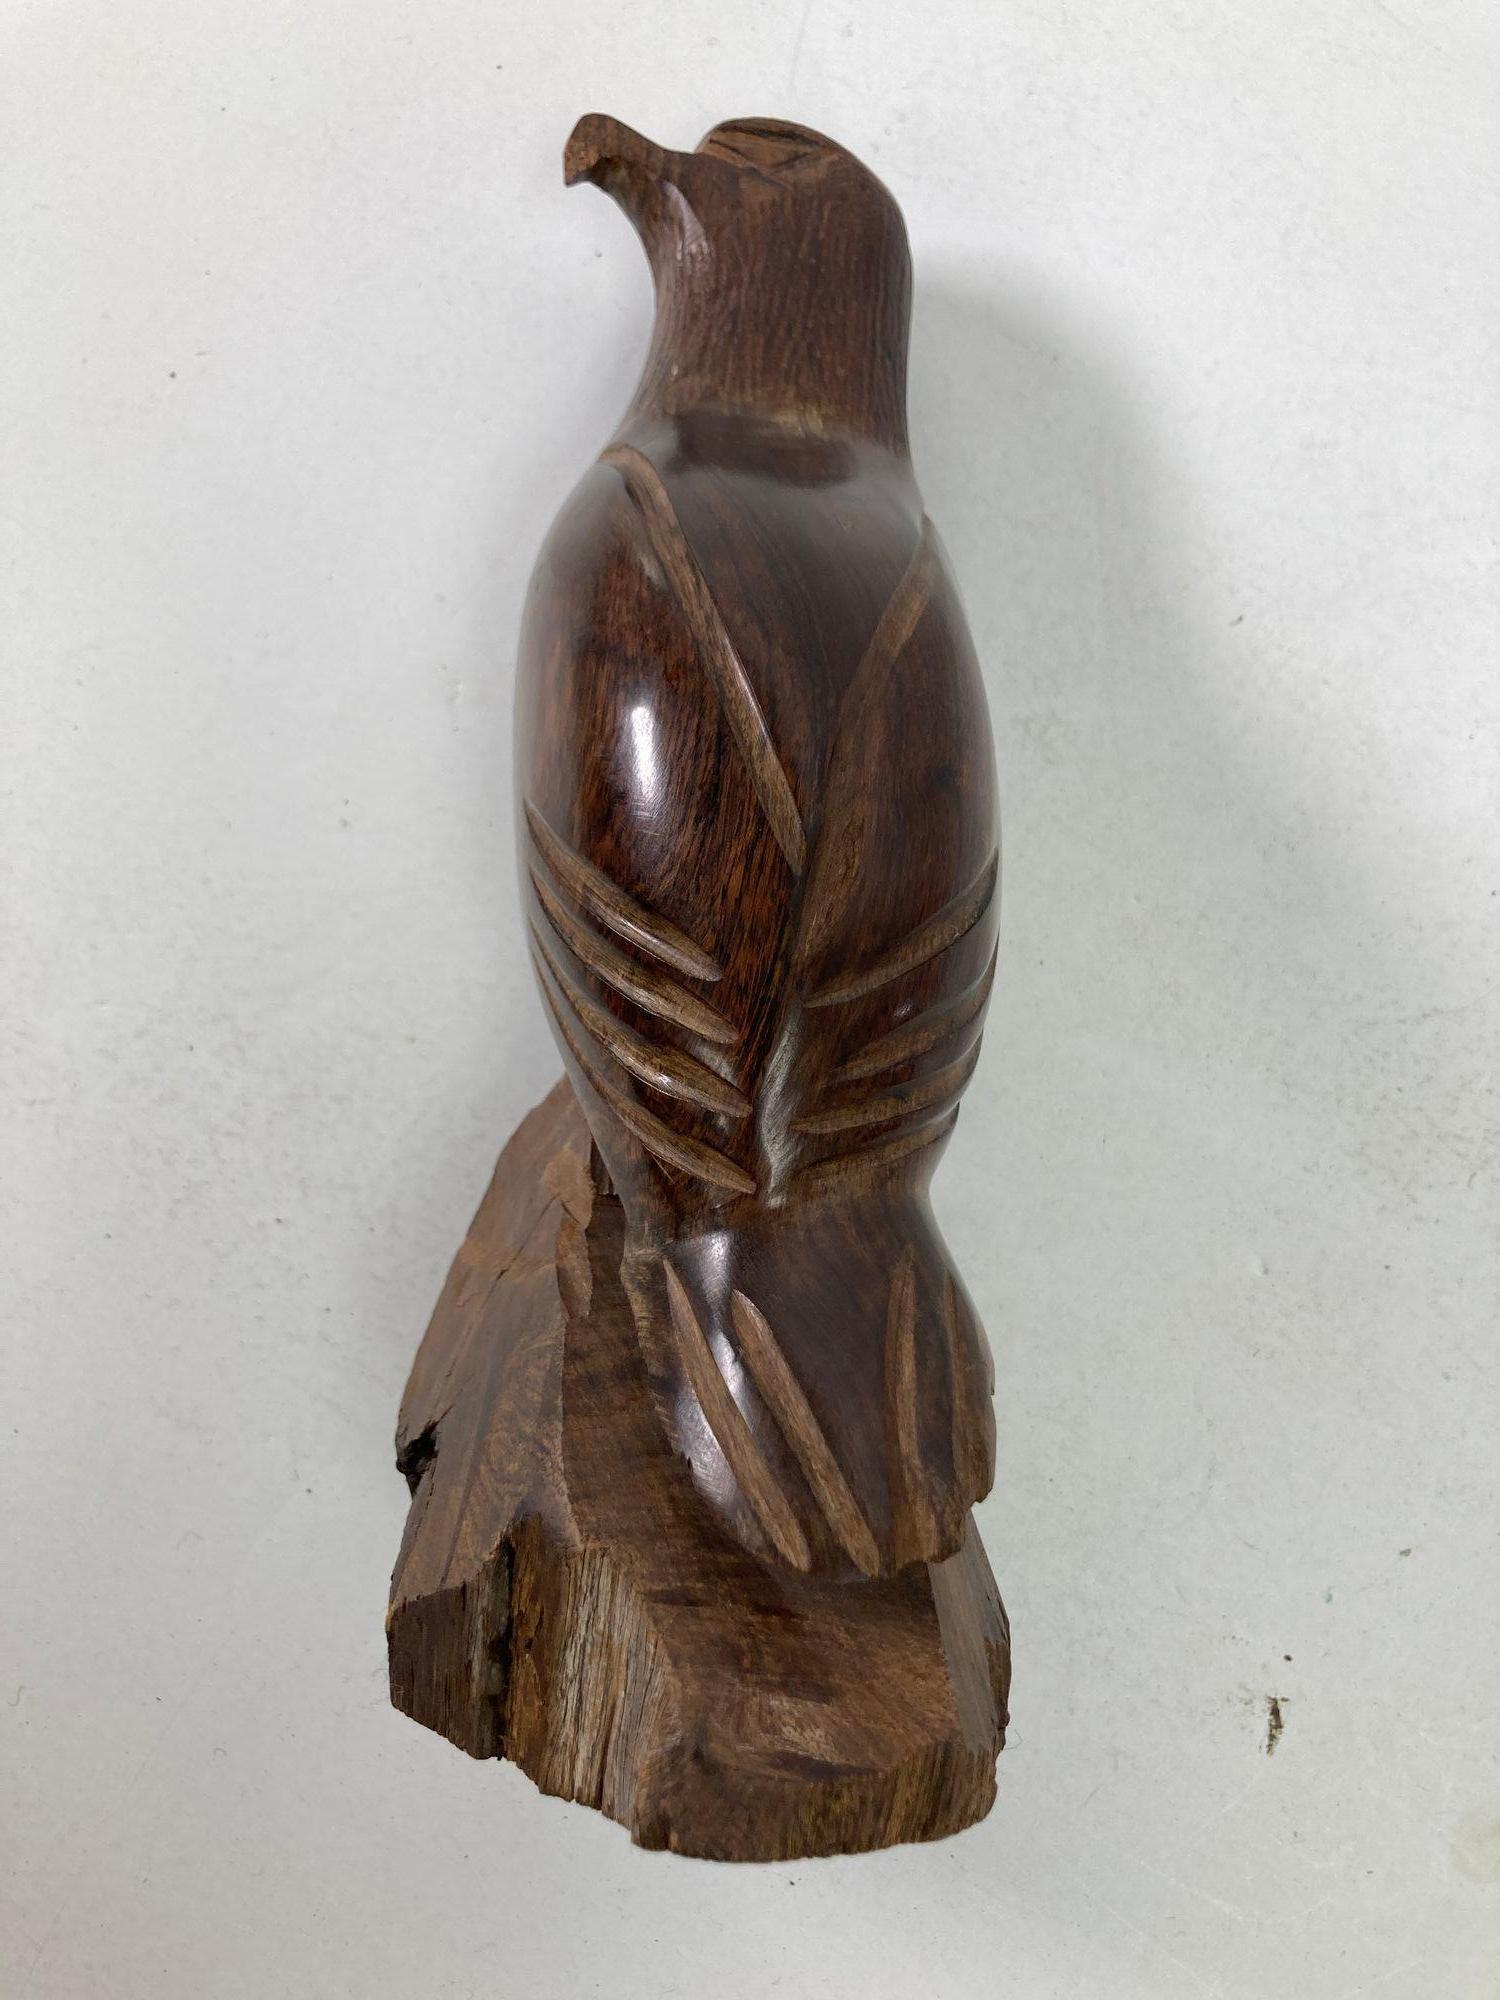 Sculpture de faucon en bois sculpté faite à la main dans les années 1960.
Vintage Seri Ironwood Animal Sculpture sculptée à la main d'un aigle ou d'un faucon américain.
Vintage Sculpture en bois de noyer sculptée à la main, magnifique design, oiseau